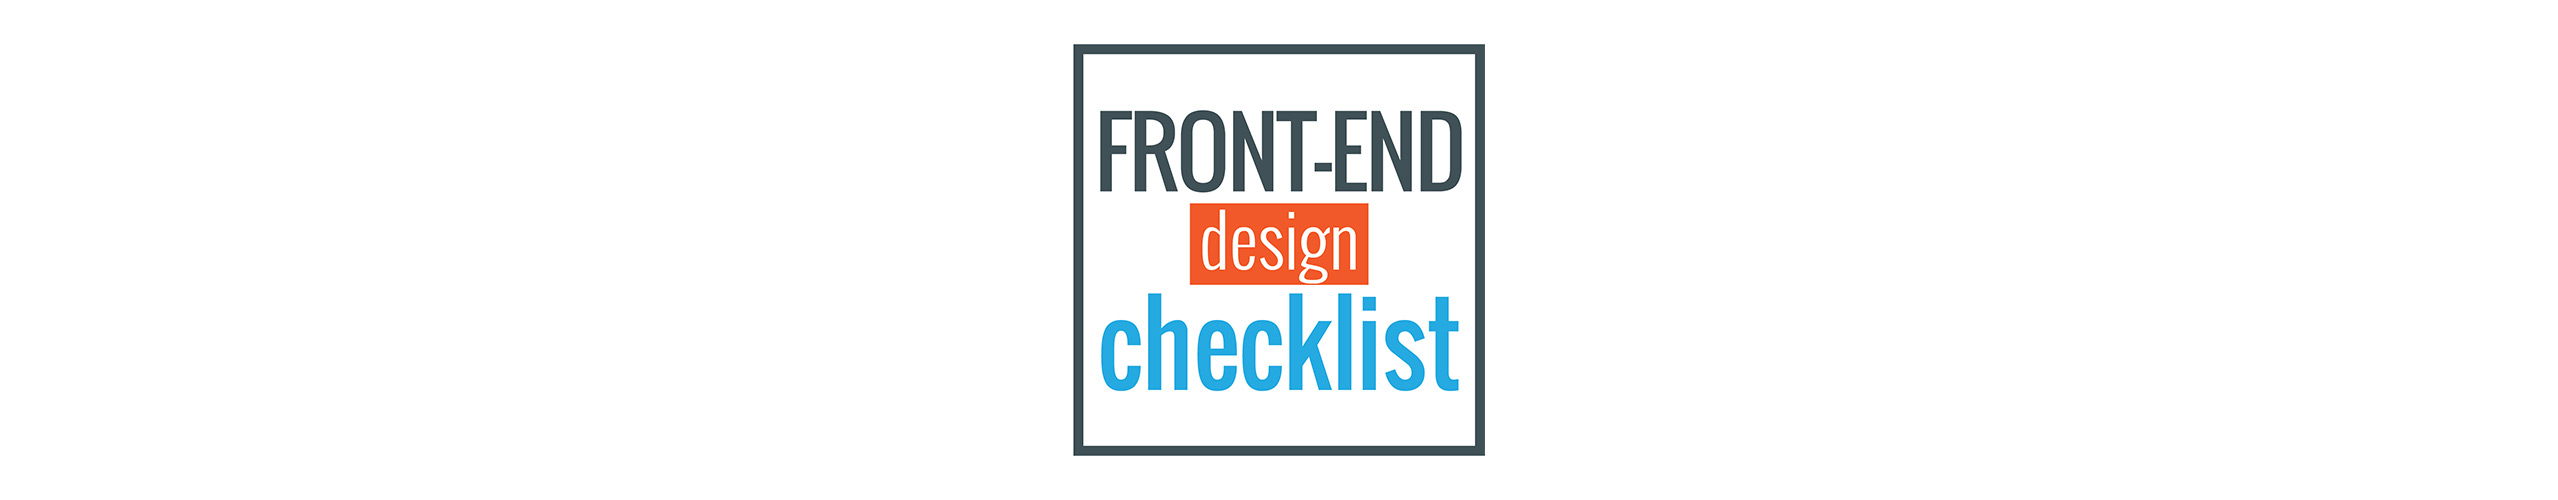 front-end-design-checklist-banner.jpg